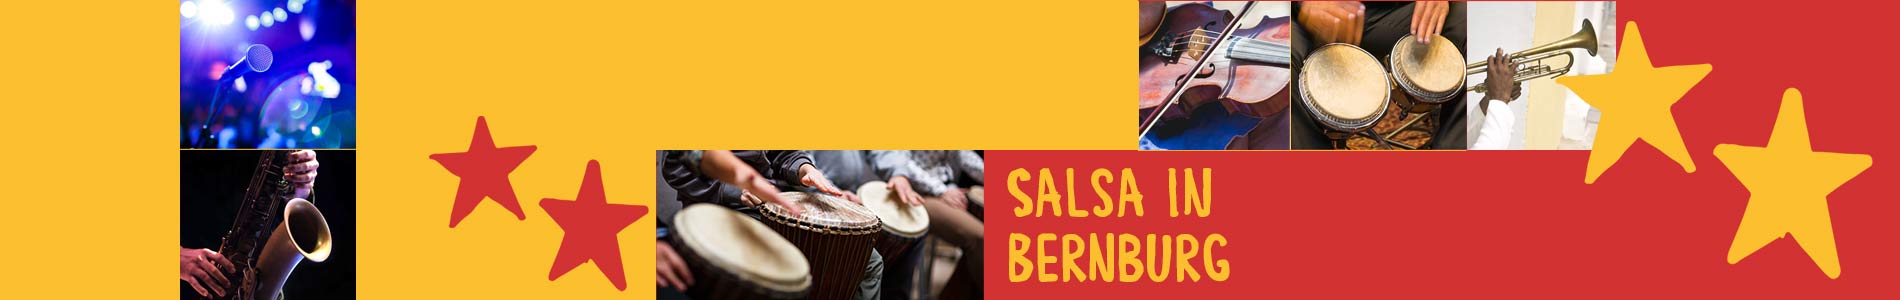 Salsa in Bernburg – Salsa lernen und tanzen, Tanzkurse, Partys, Veranstaltungen